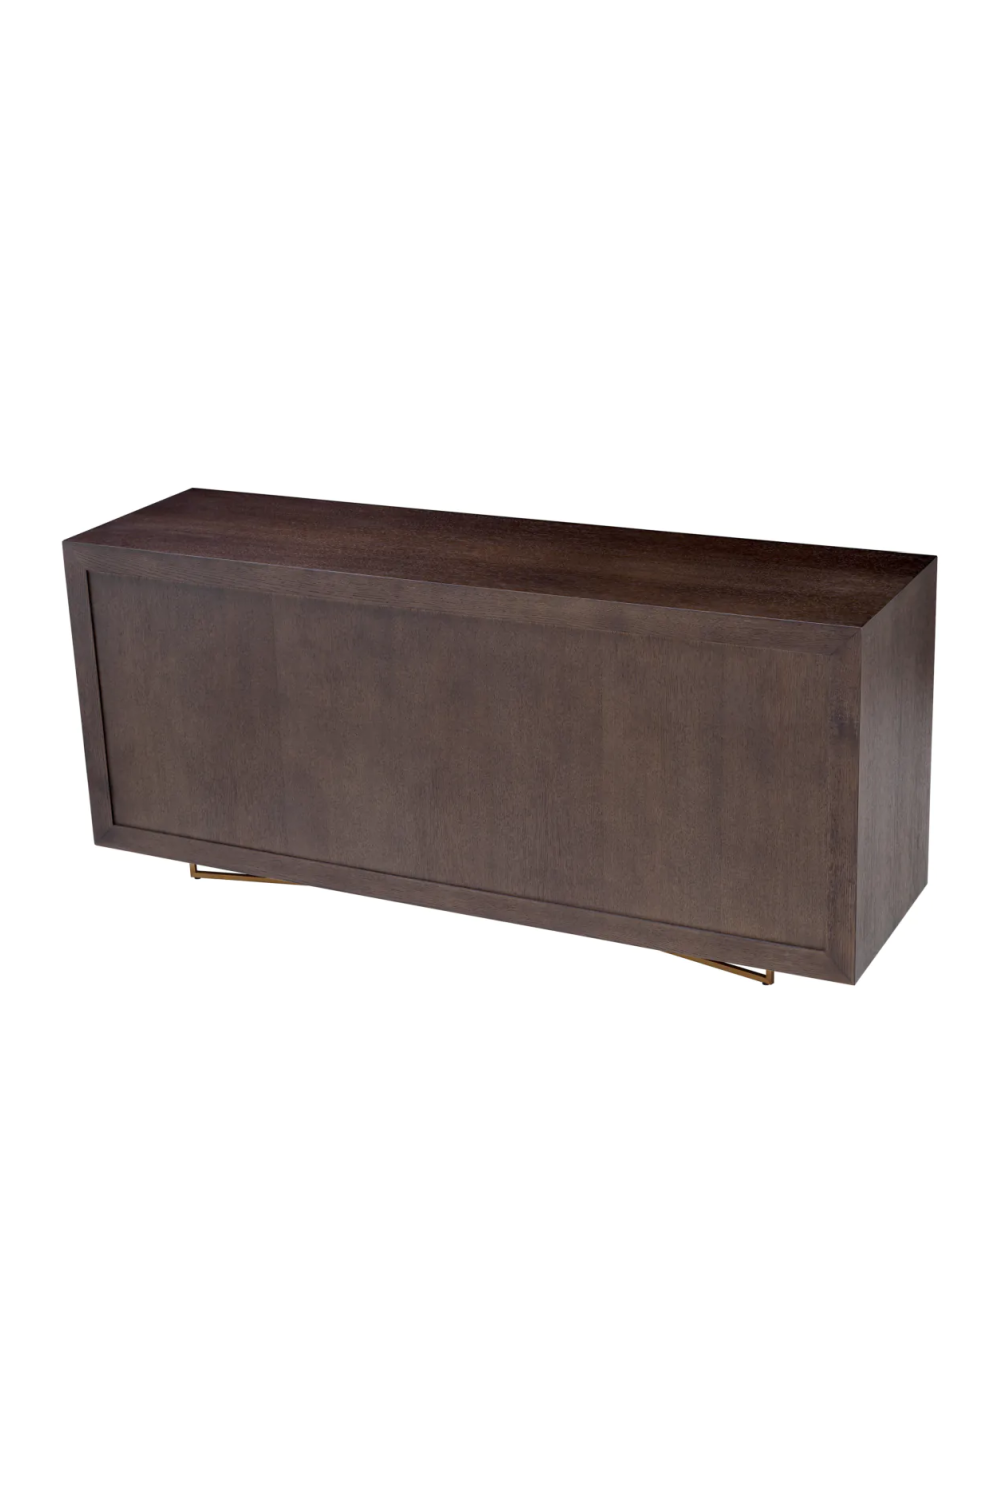 Oak Veneer Modern Sideboard | Eichholtz Sonesta | Oroa.com